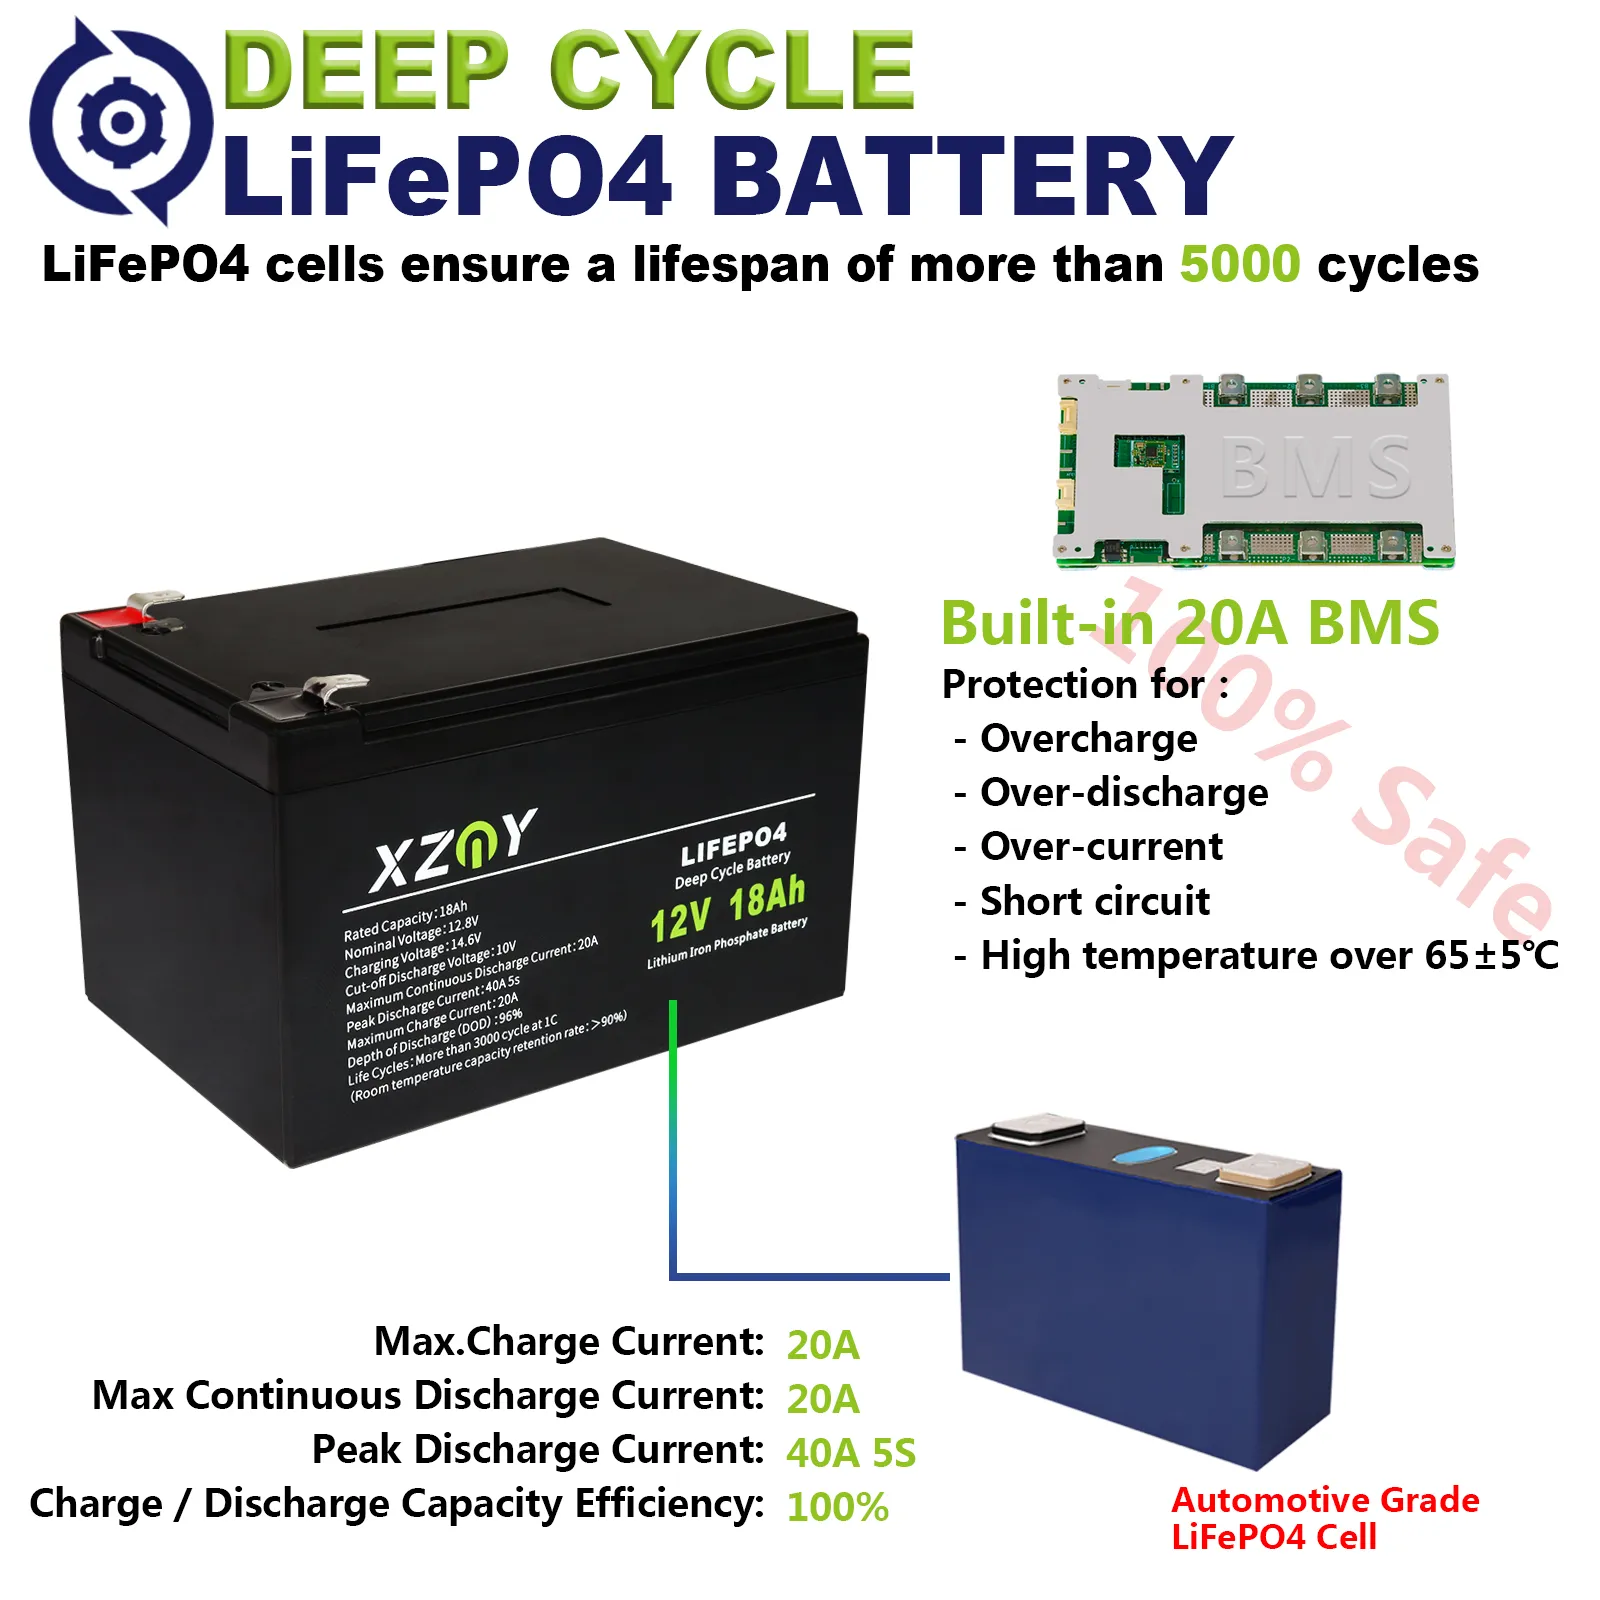 XZNY 12V 18Ah LiFePO4 Battery